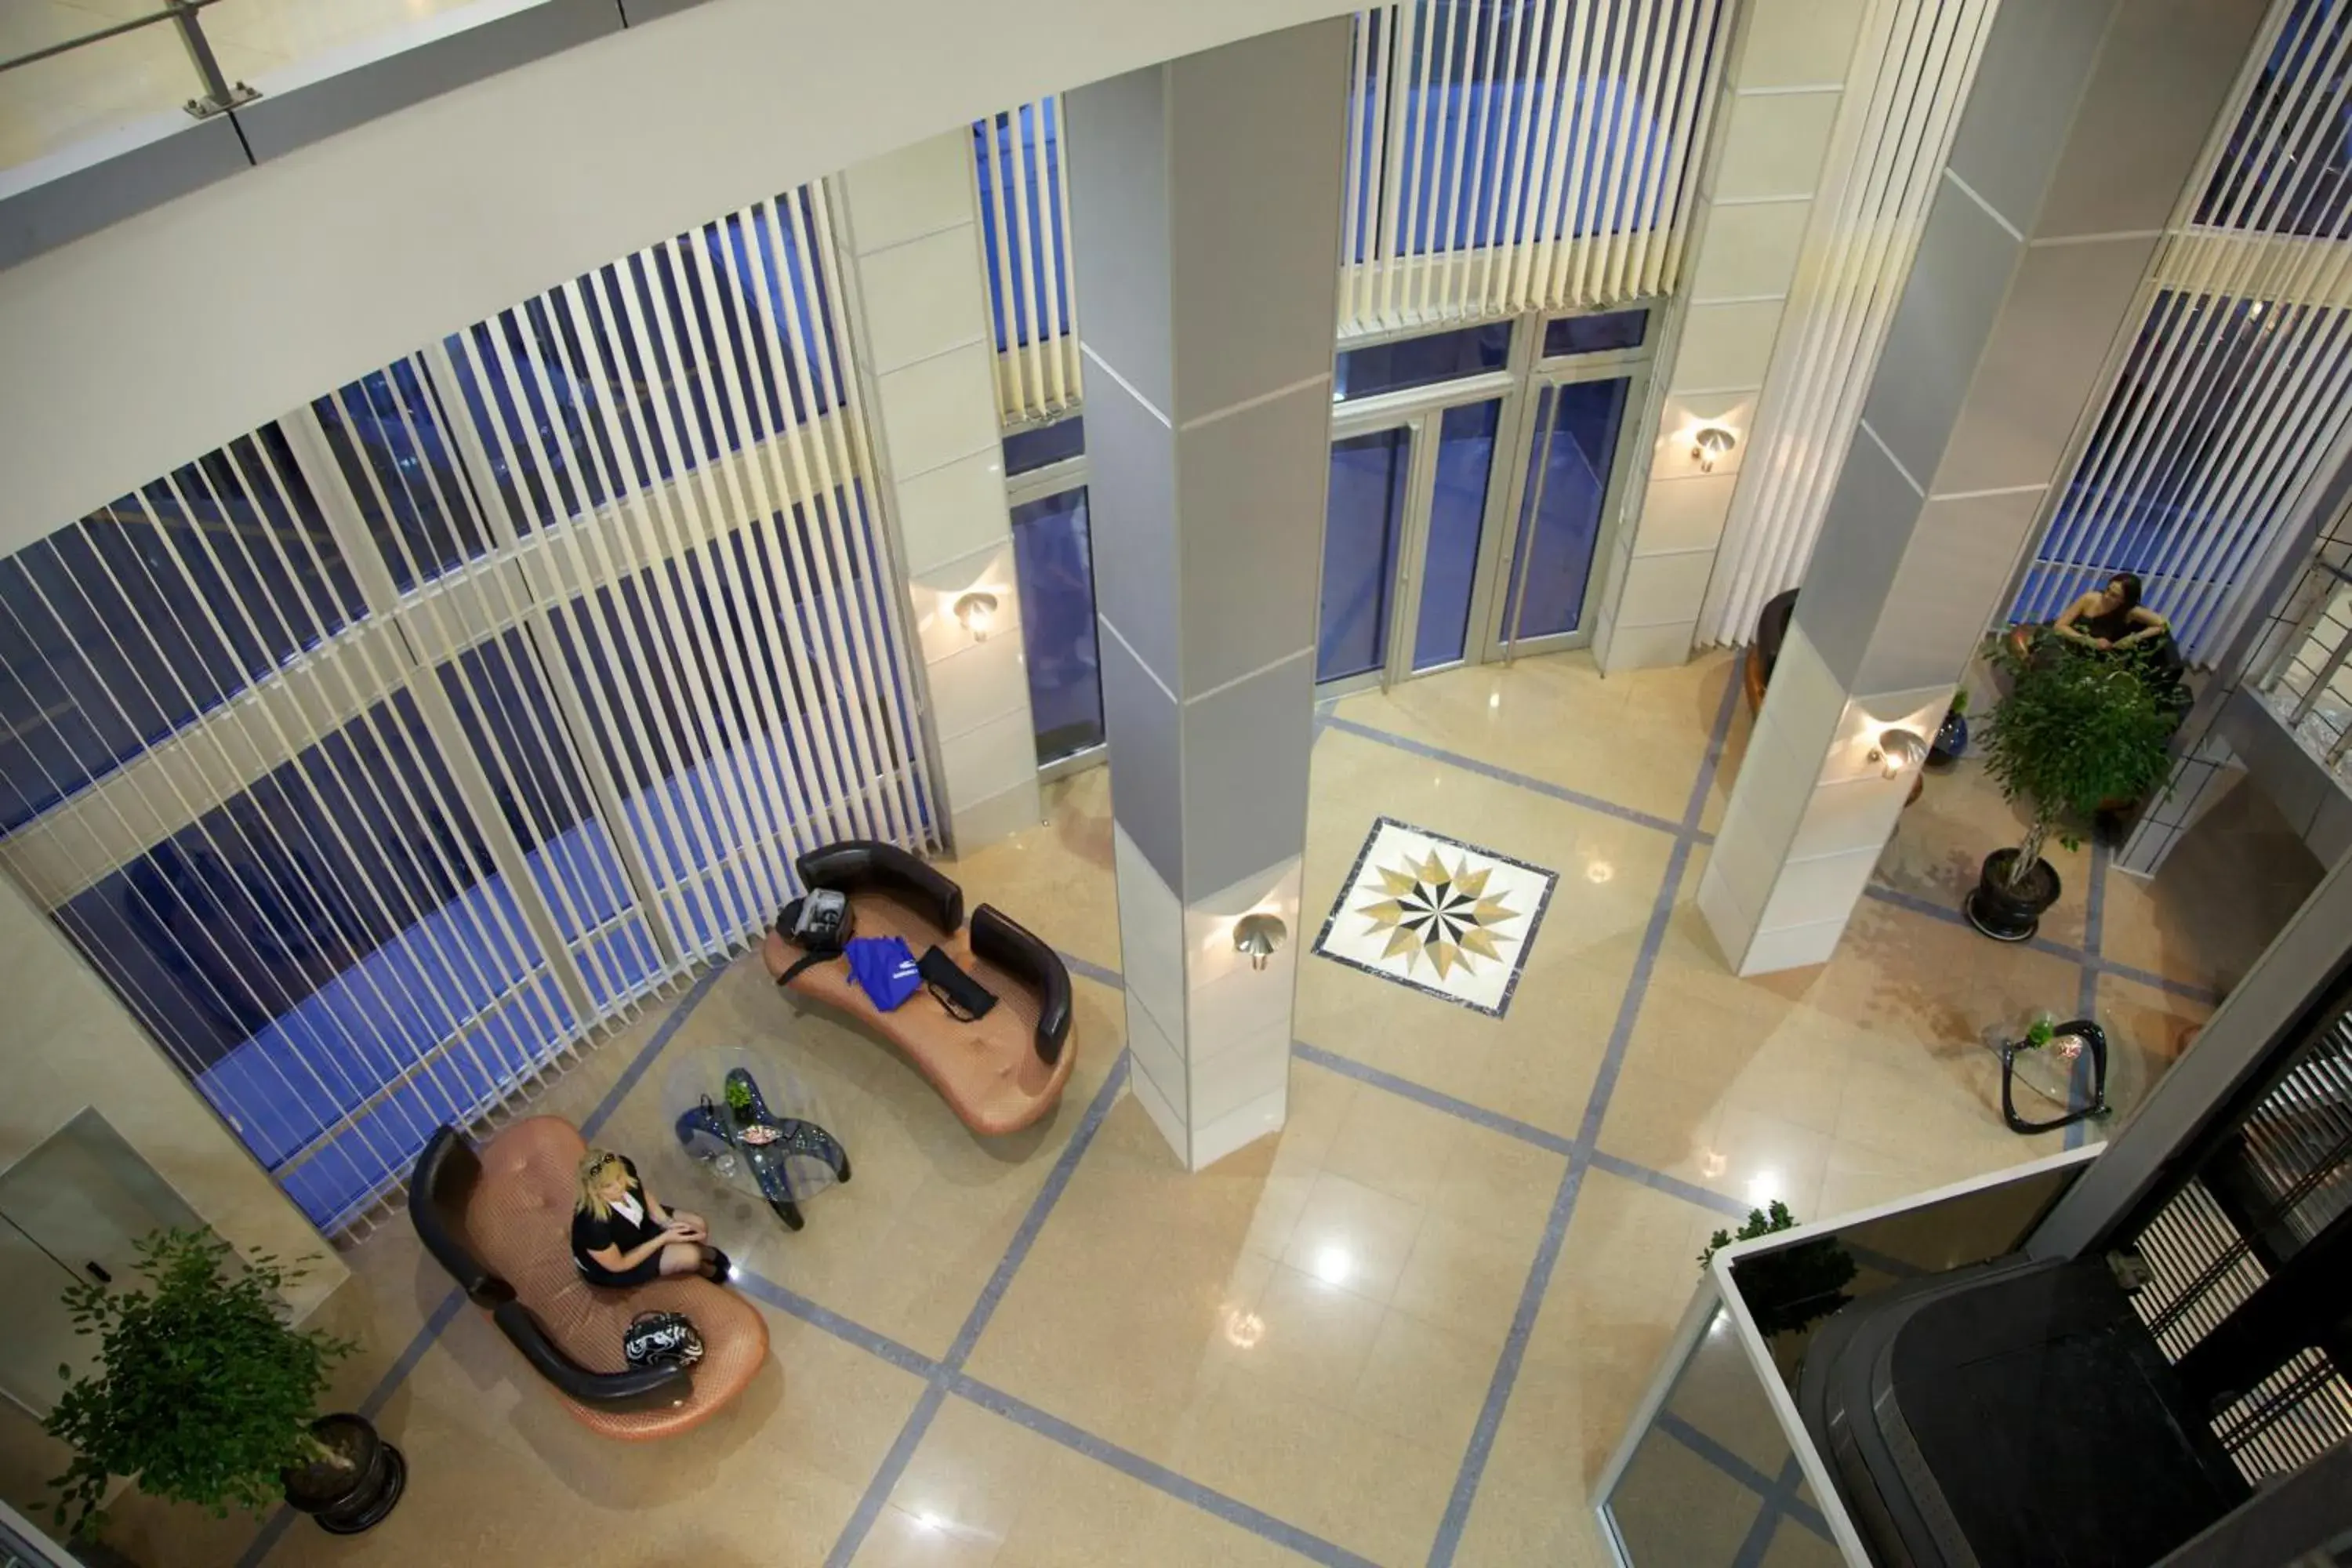 Lobby or reception, Bathroom in Hotel Zeder Garni